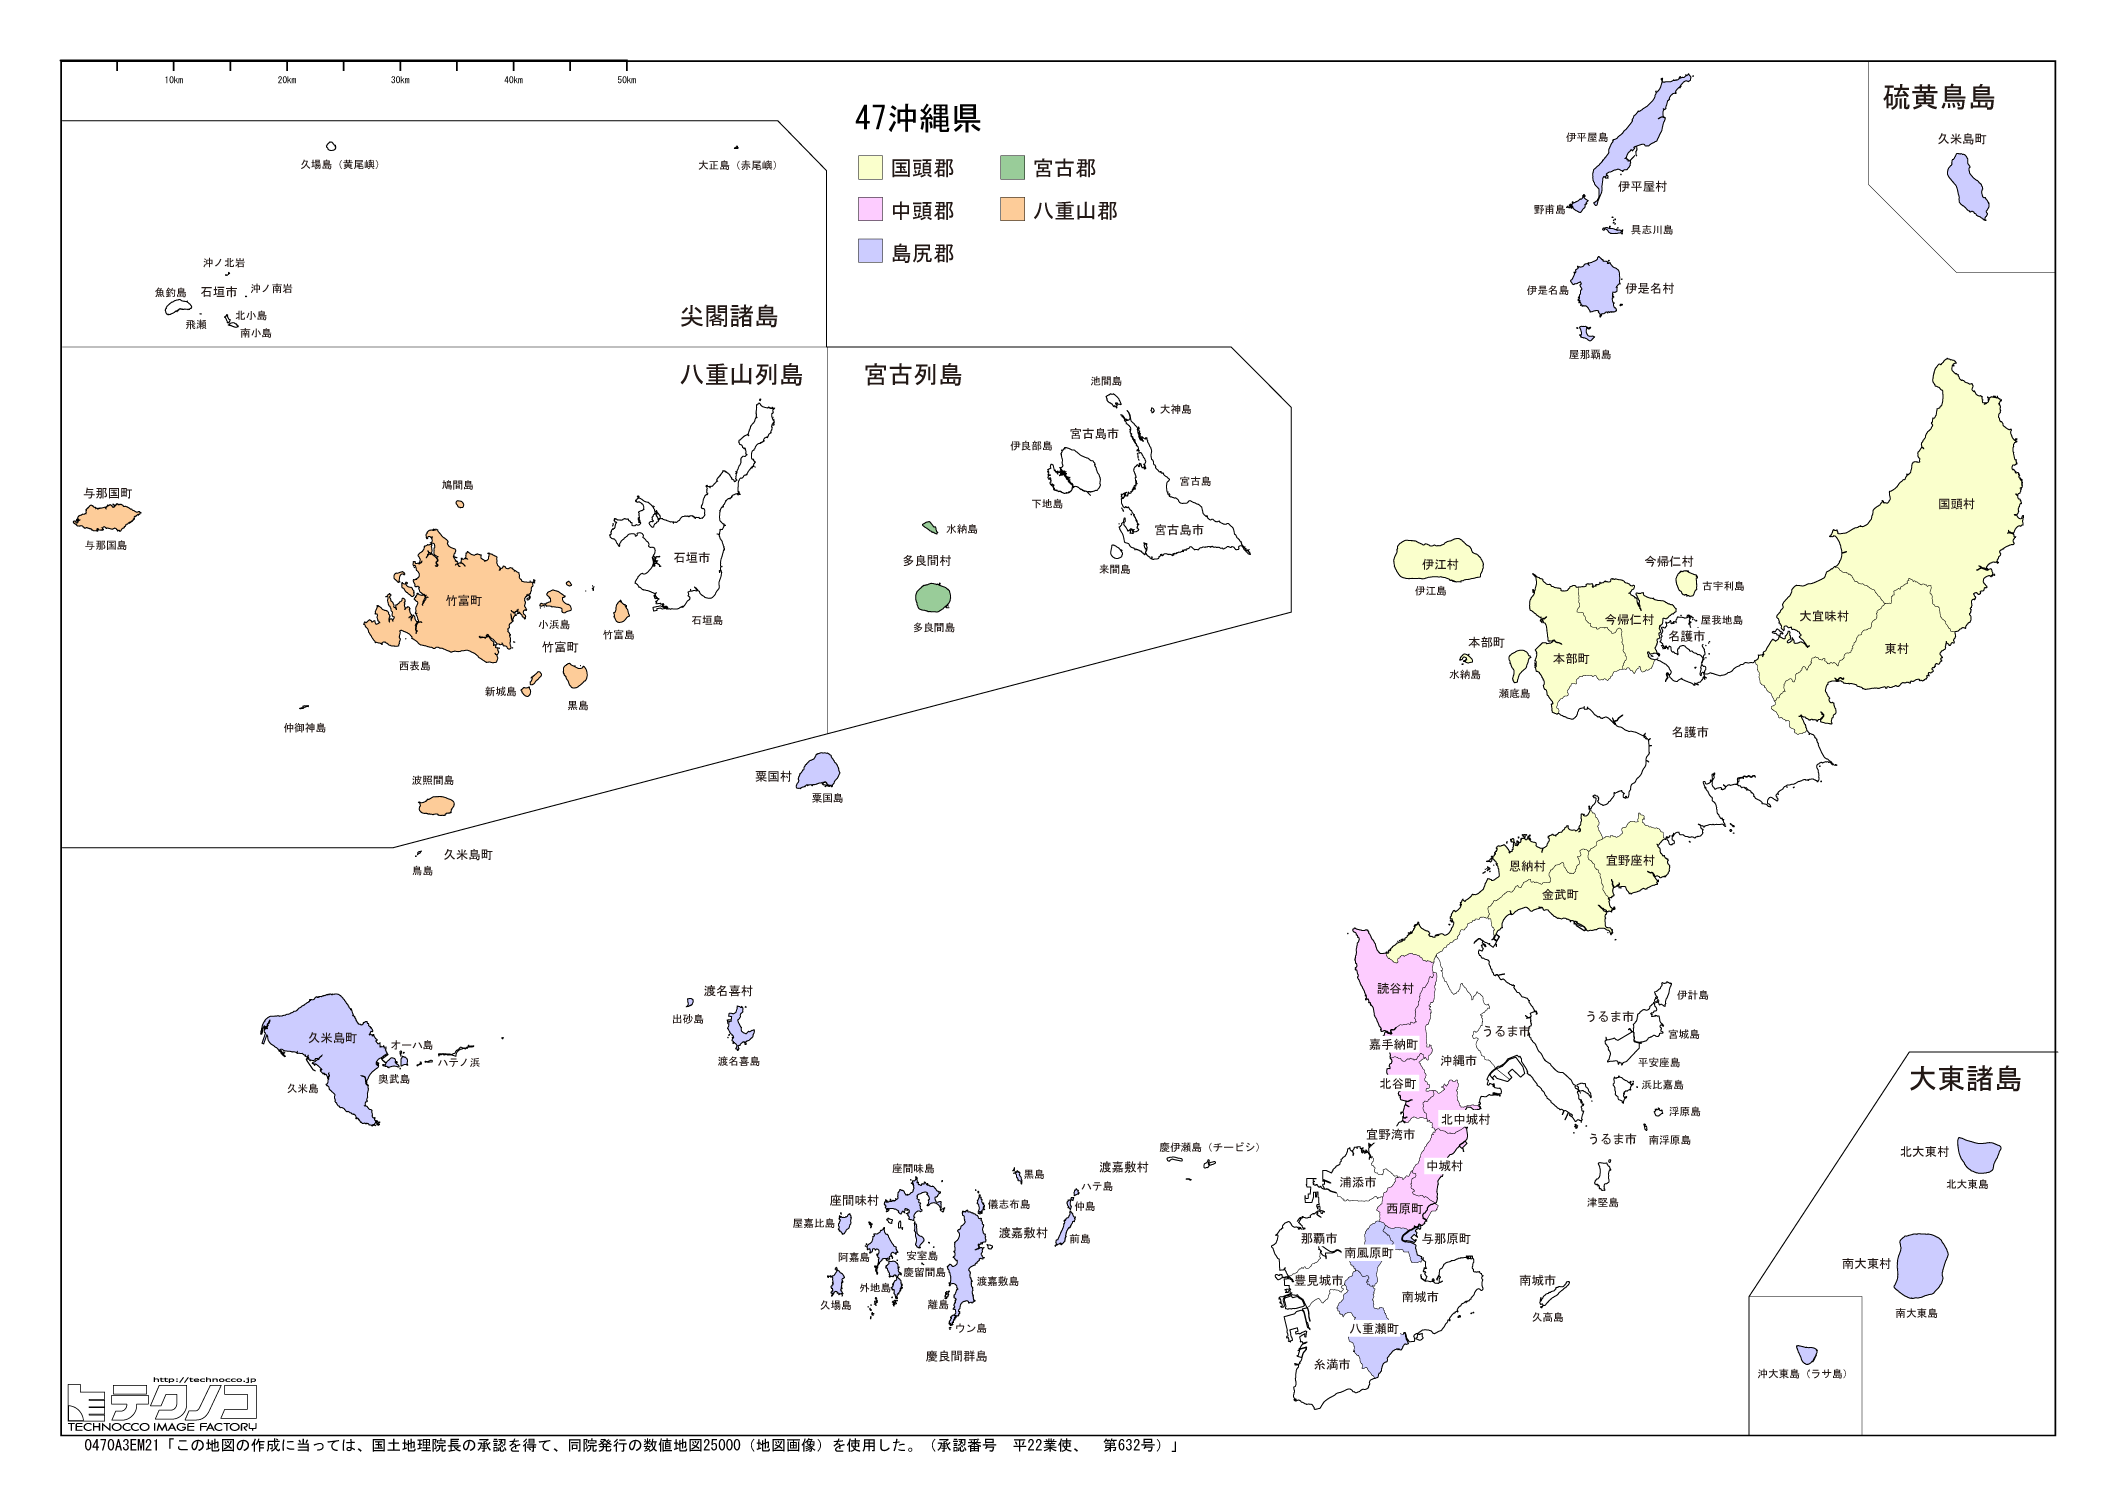 沖縄県の白地図と市町村の合併情報